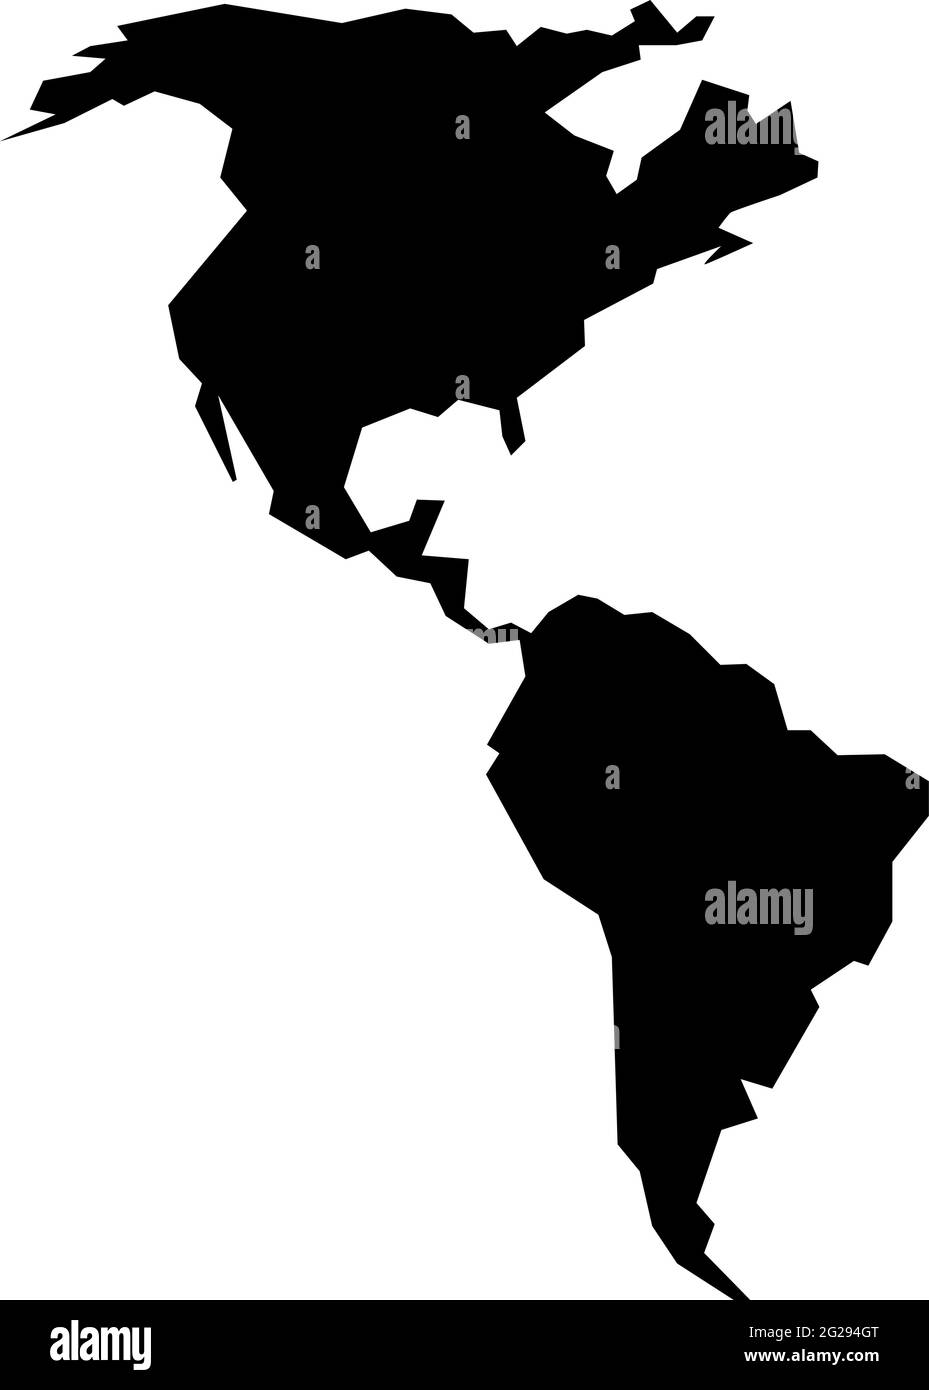 Profilo ruvido del continente americano isolato su illustrazione vettoriale bianca Illustrazione Vettoriale